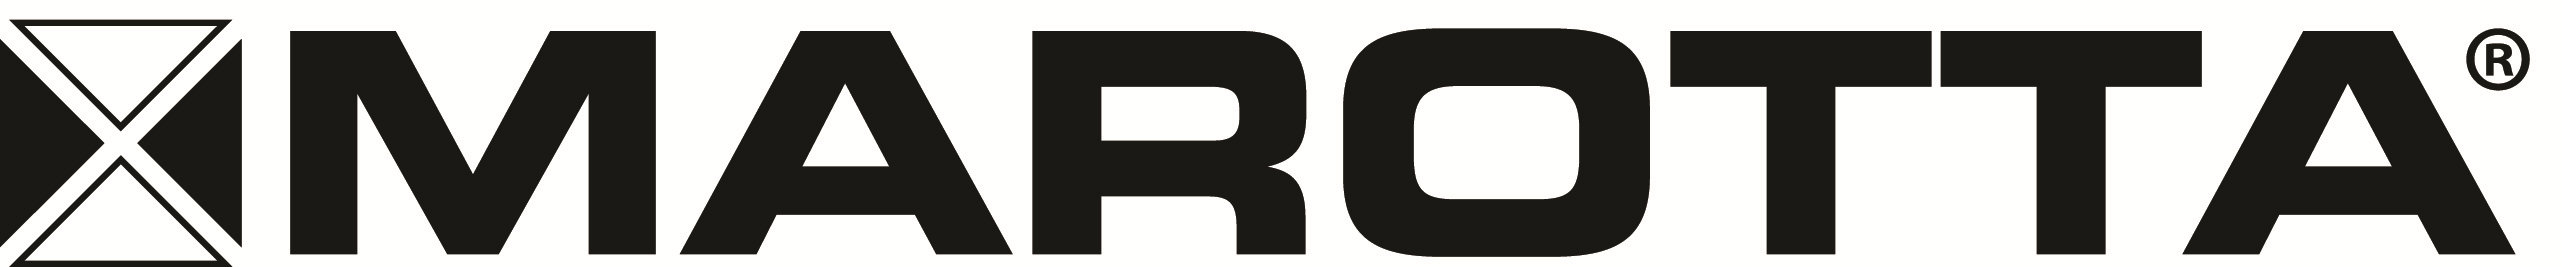 Marotta Controls logo